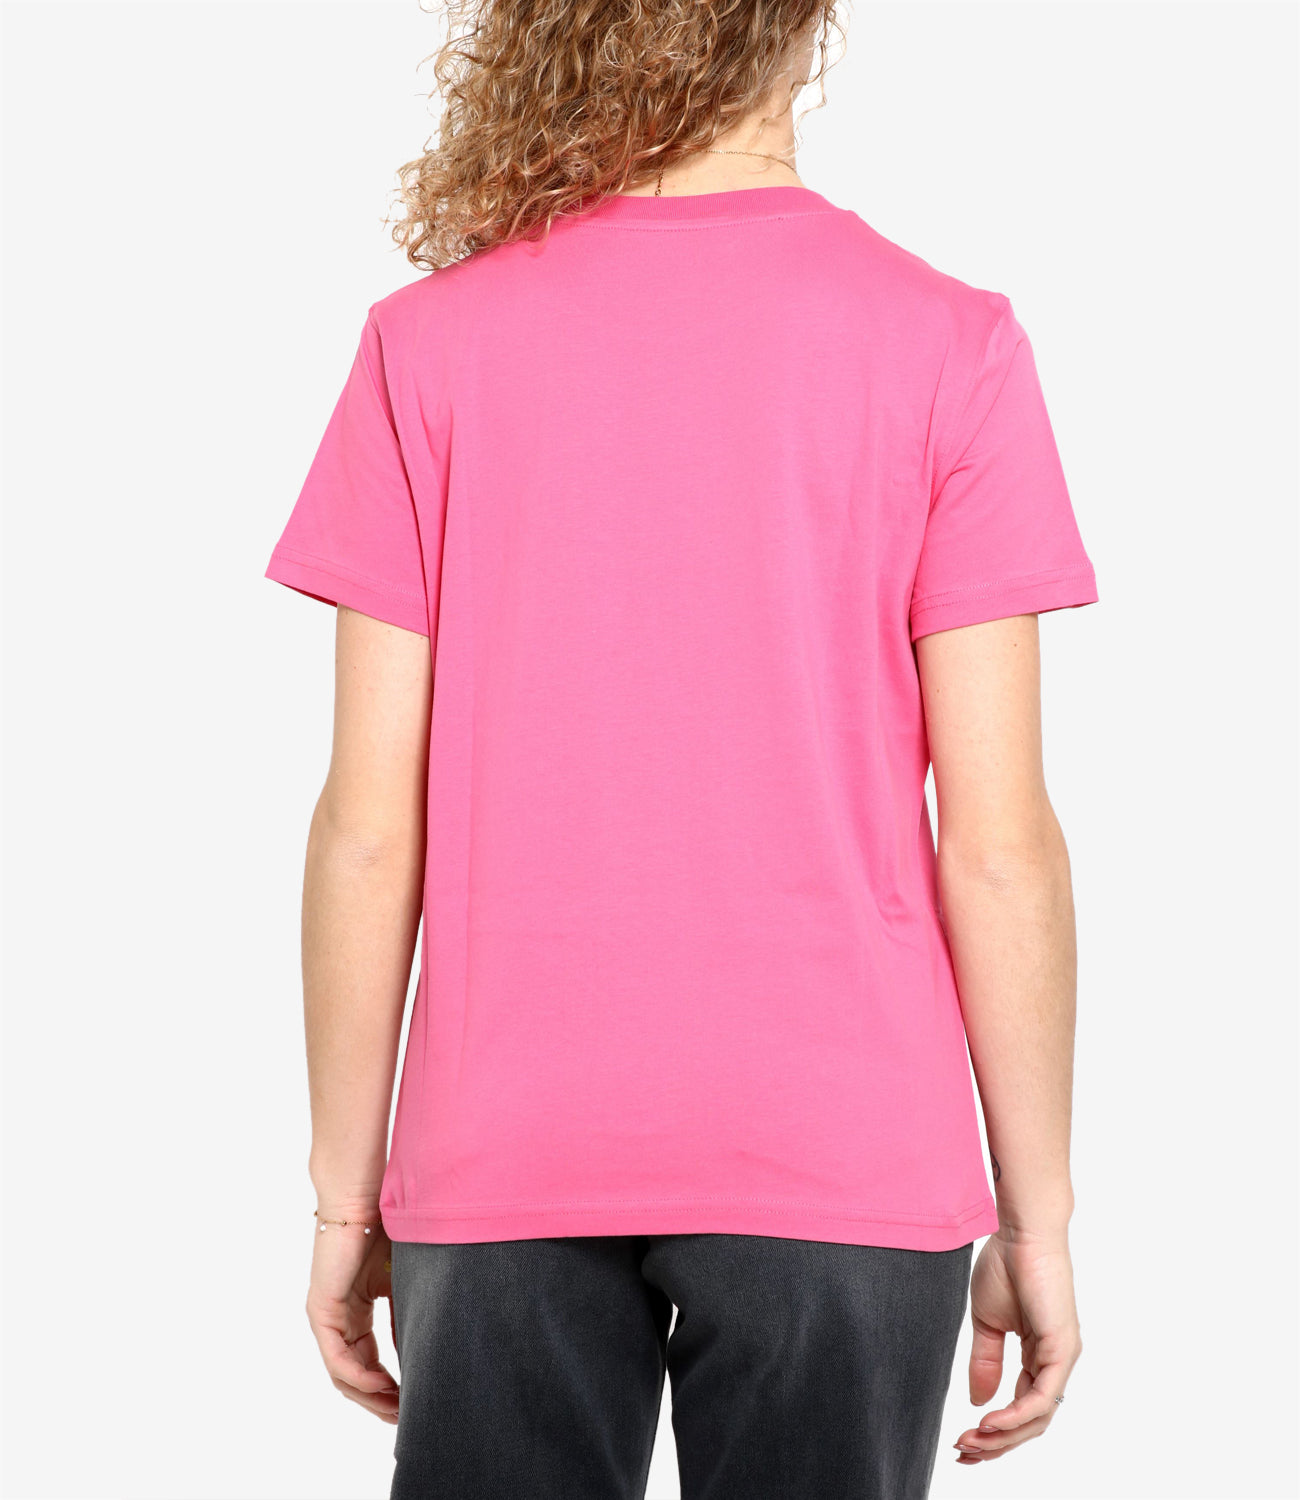 Moschino | T-Shirt Rosa